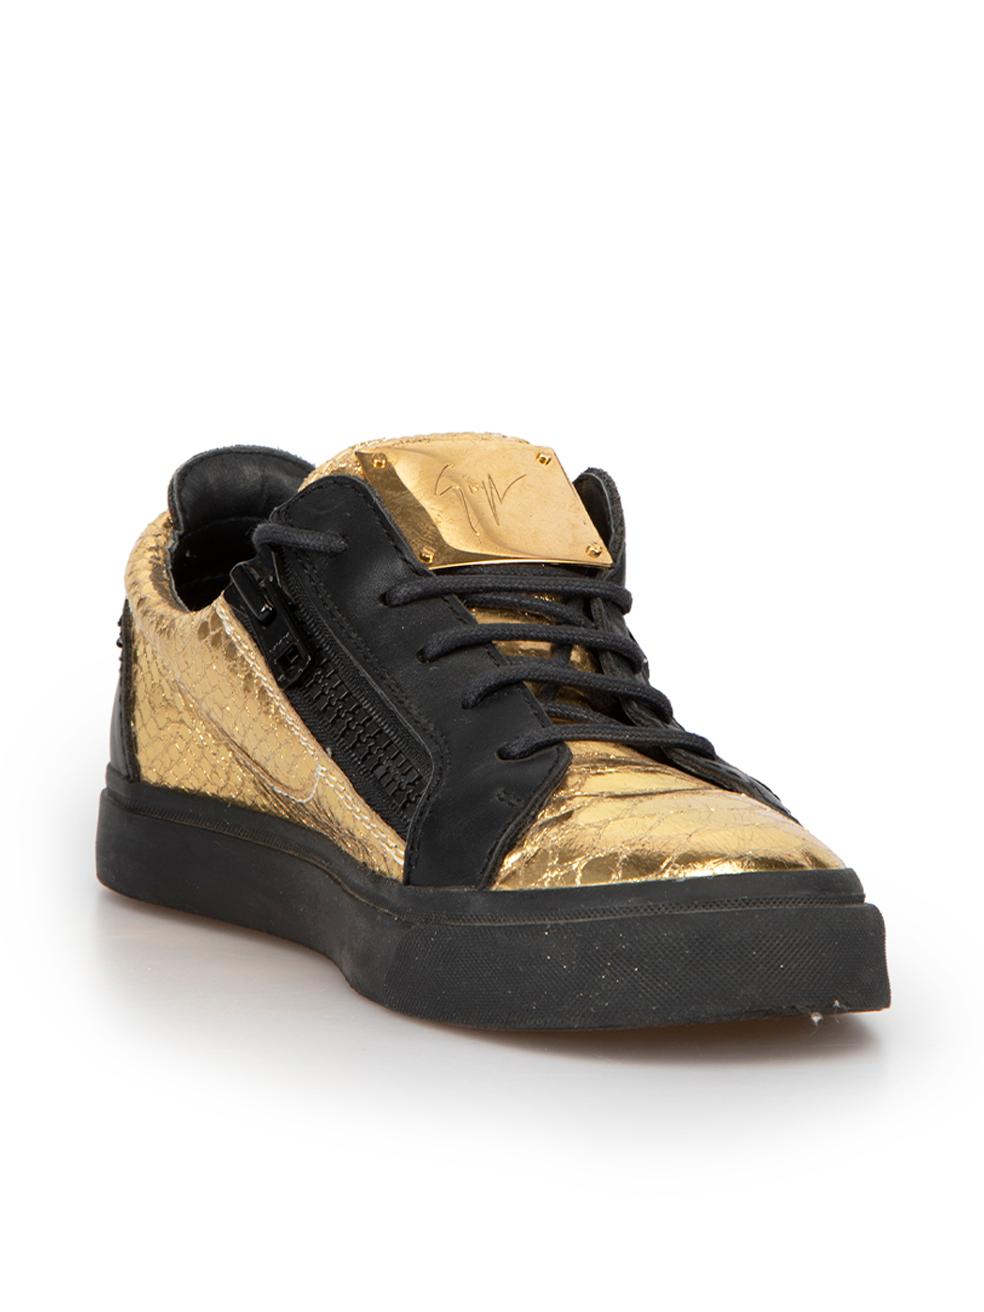 CONDIT ist sehr gut. Kaum sichtbare Abnutzungserscheinungen an den Schuhen sind bei diesem gebrauchten Giuseppe Zanotti Designer Wiederverkaufsartikel zu erkennen. 



Einzelheiten


Gold und Schwarz

Leder

Niedrige Turnschuhe

Geprägtes